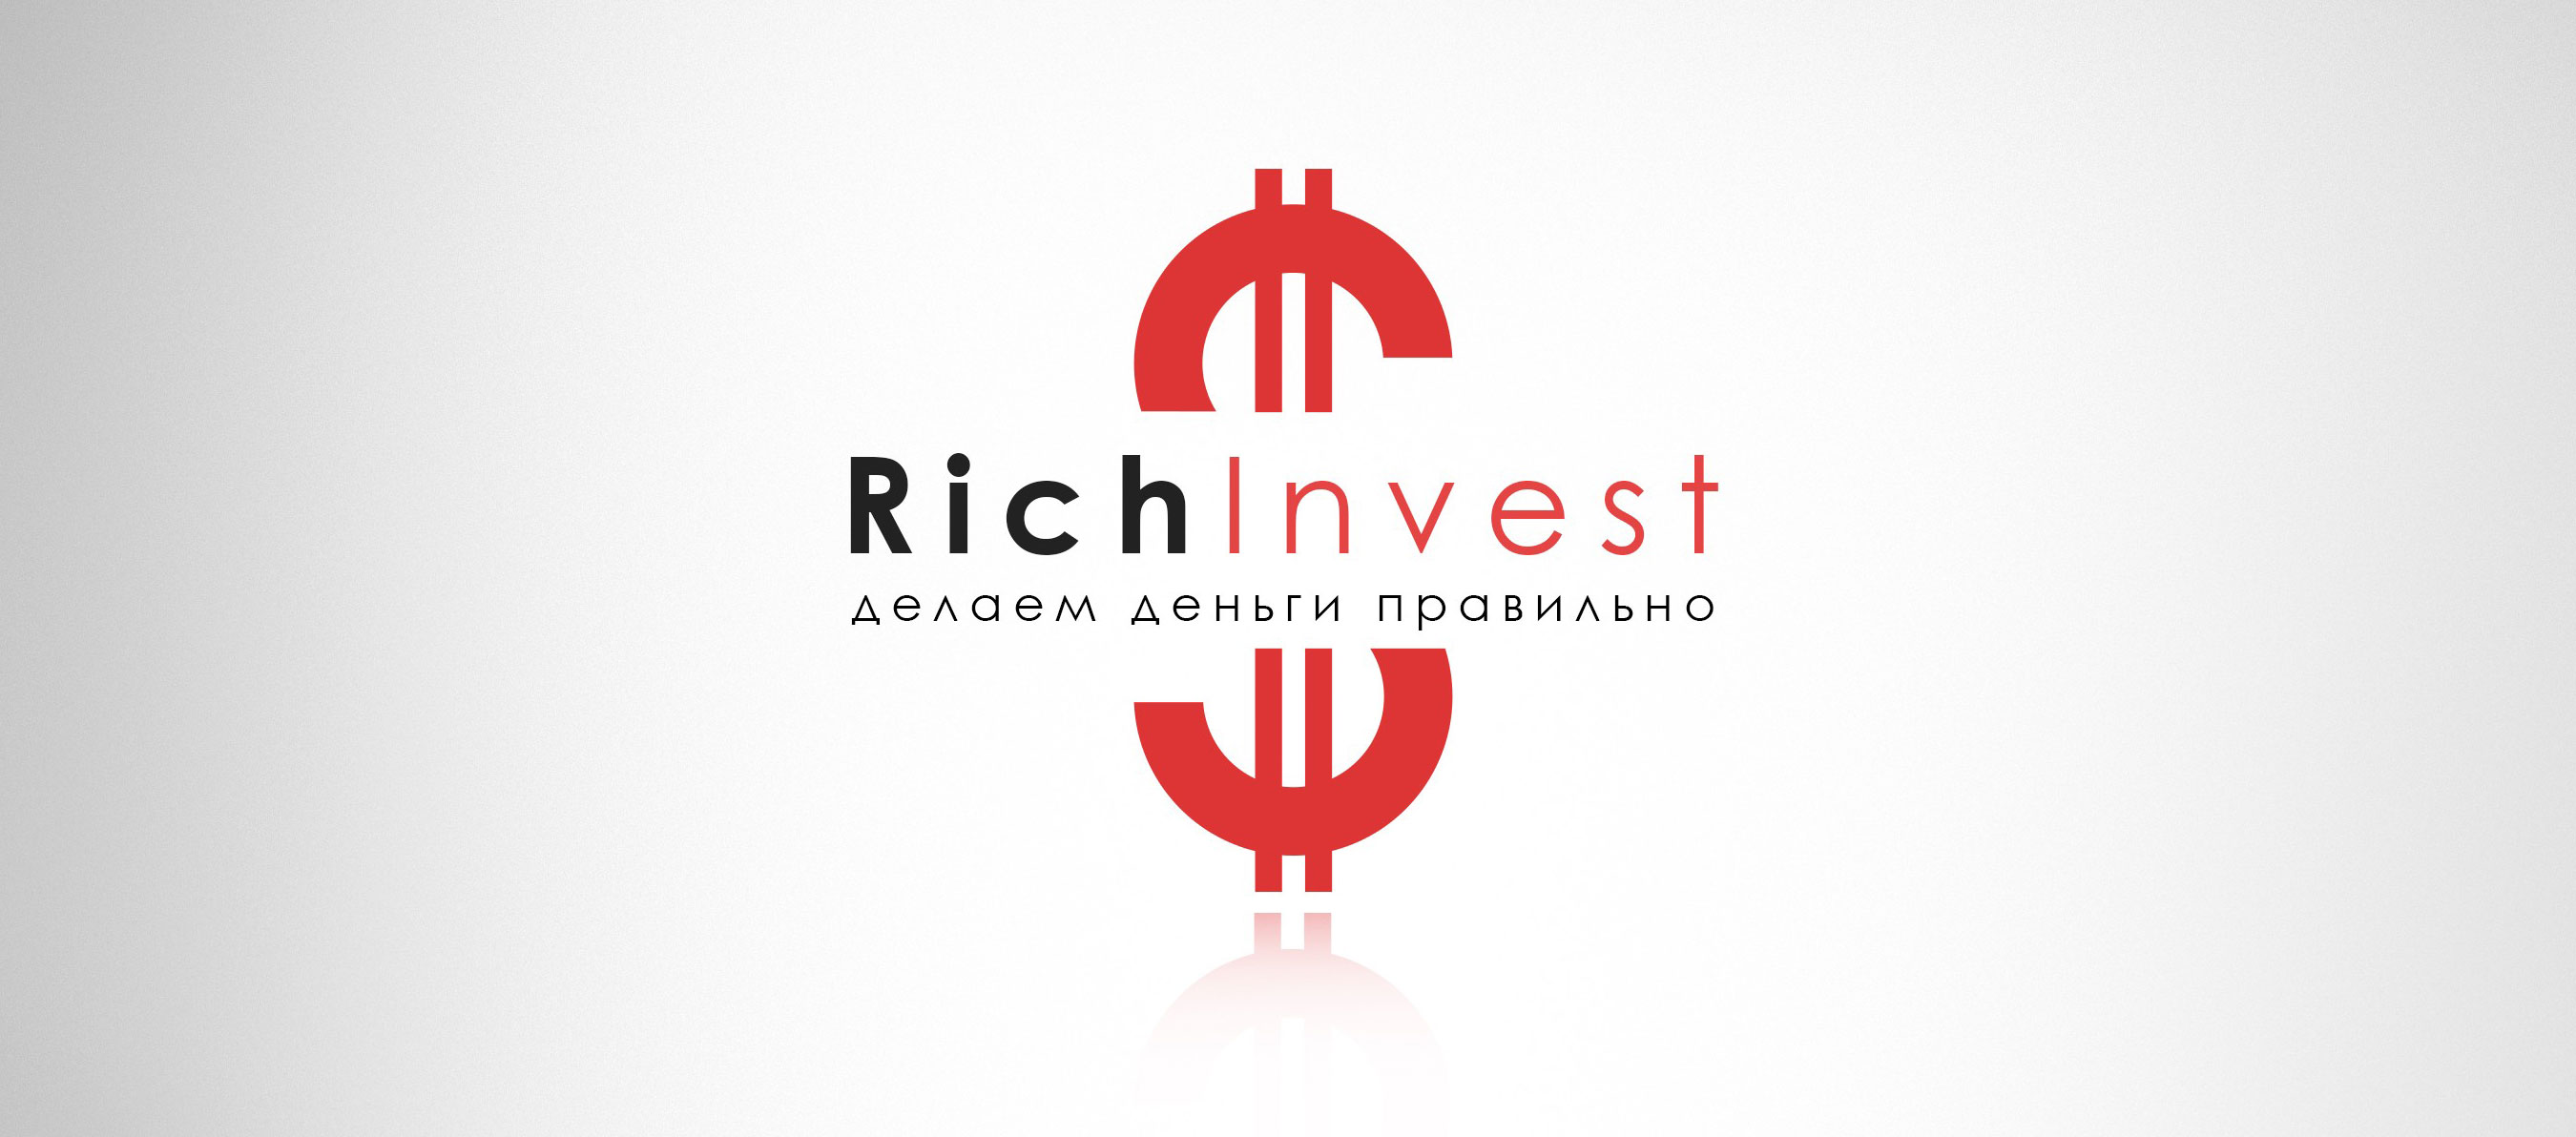 Richinvest.biz — Ваш гид по финансовым рынкам